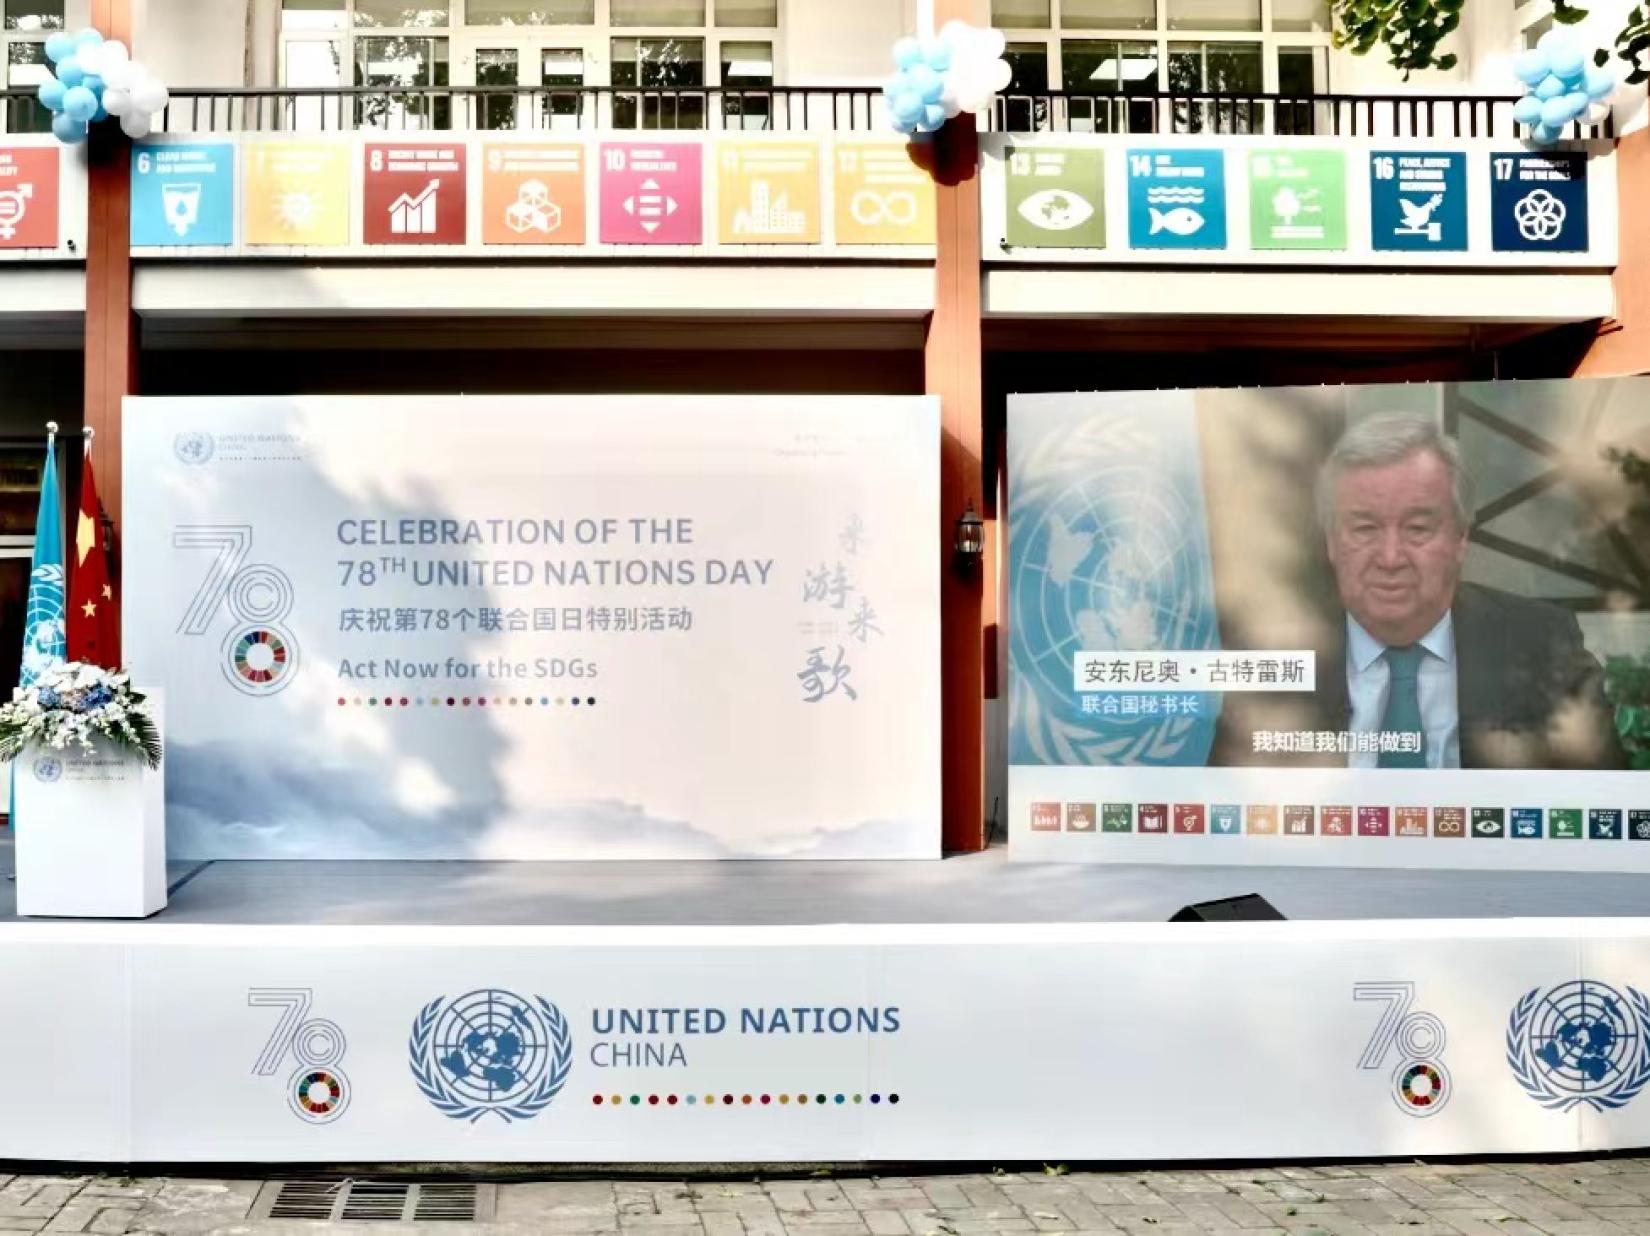 Video message from Mr. Antonio Guterres, UN Secretary-General